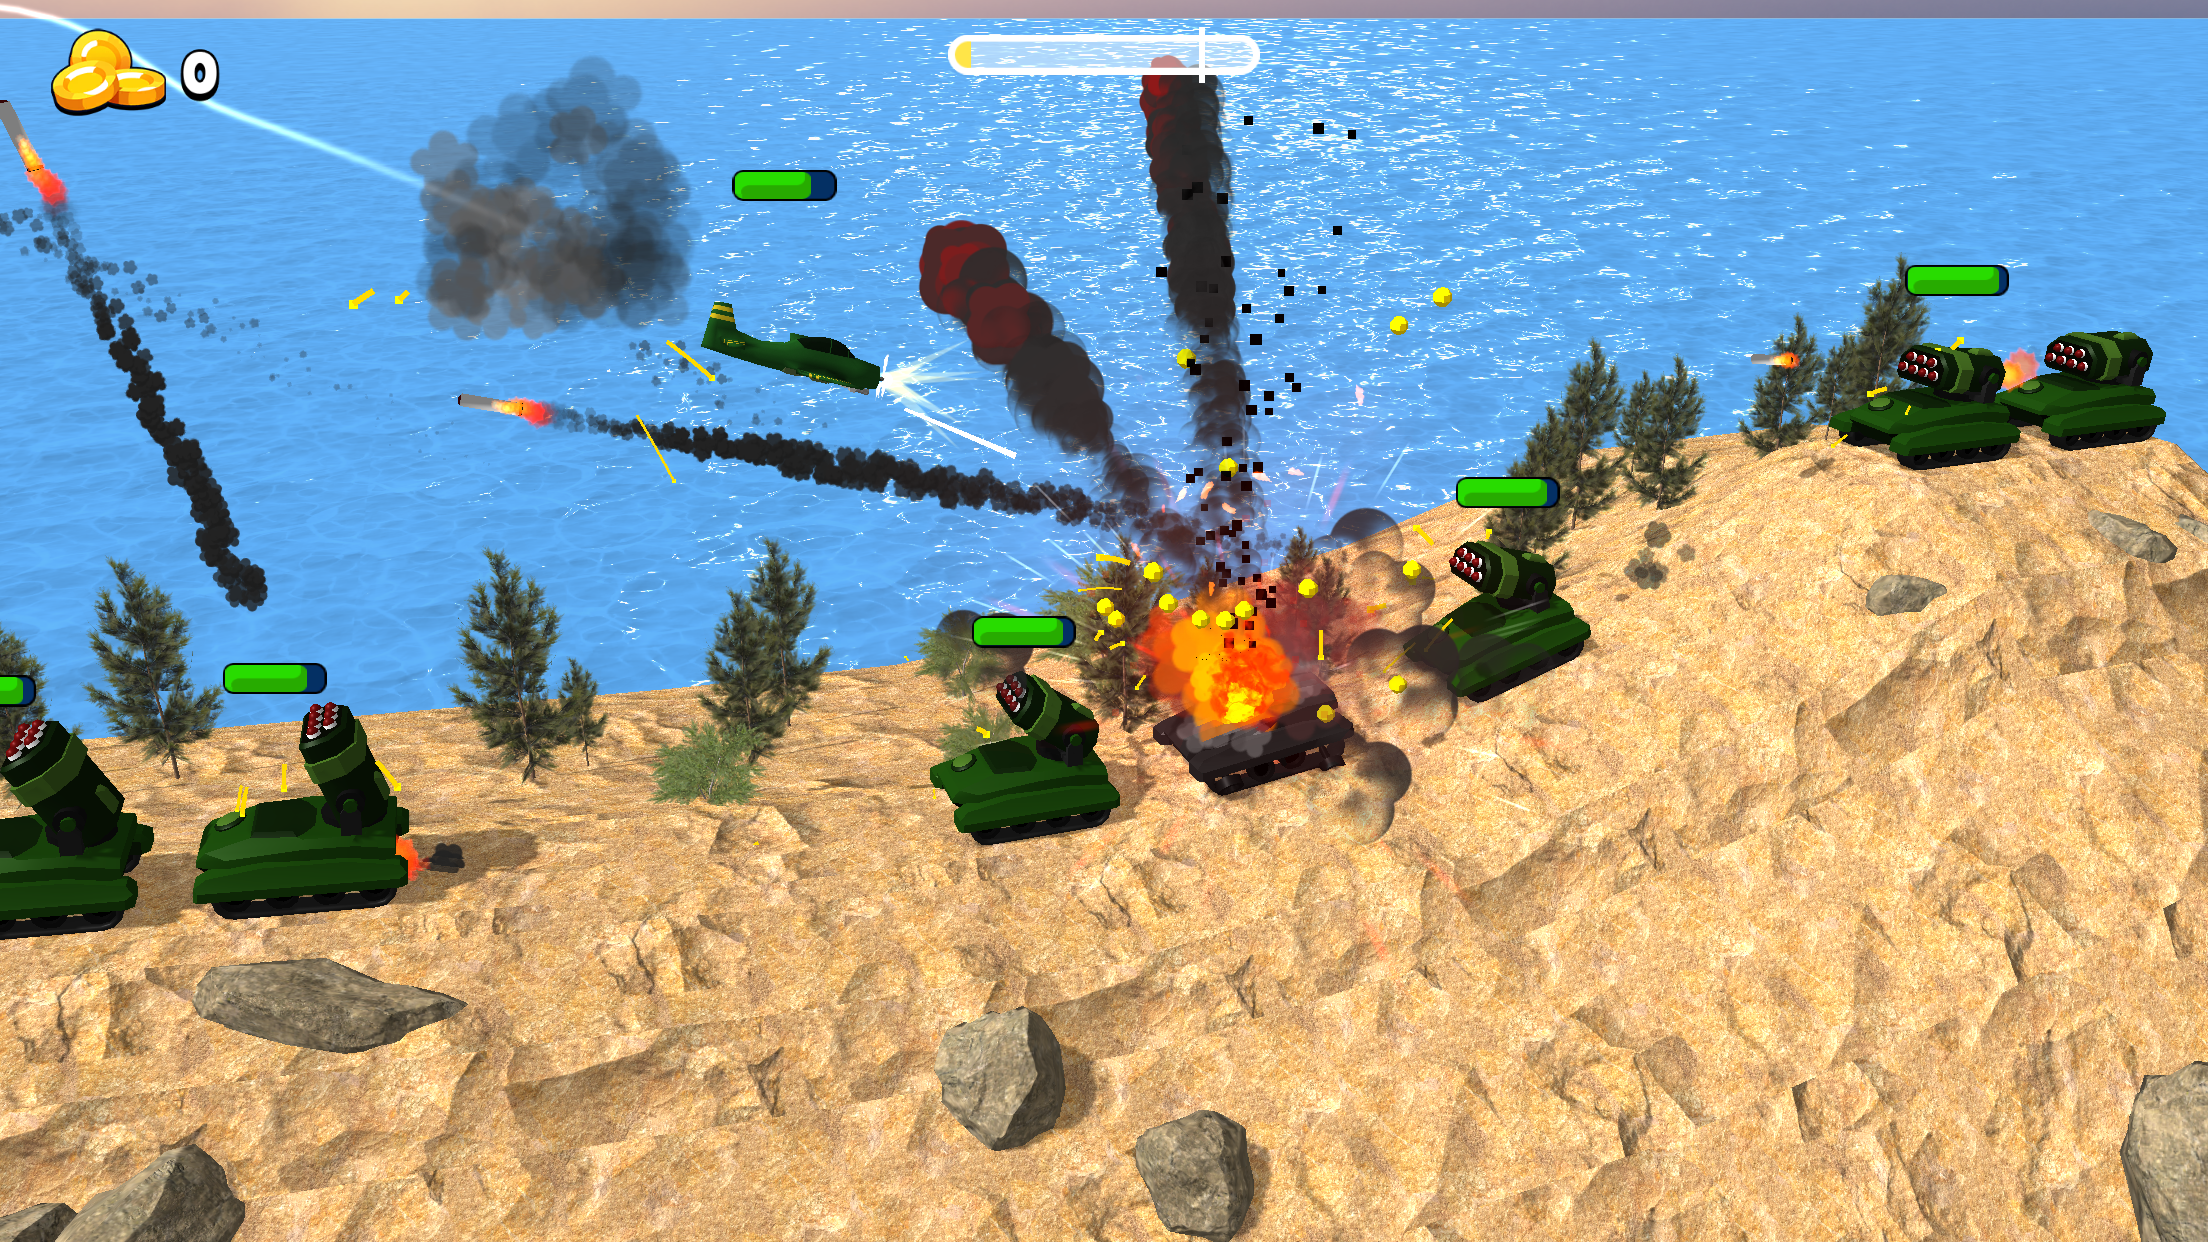 Screenshot 1 of Bomber Ace: игра о военных самолетах времен Второй мировой войны 1.2.38